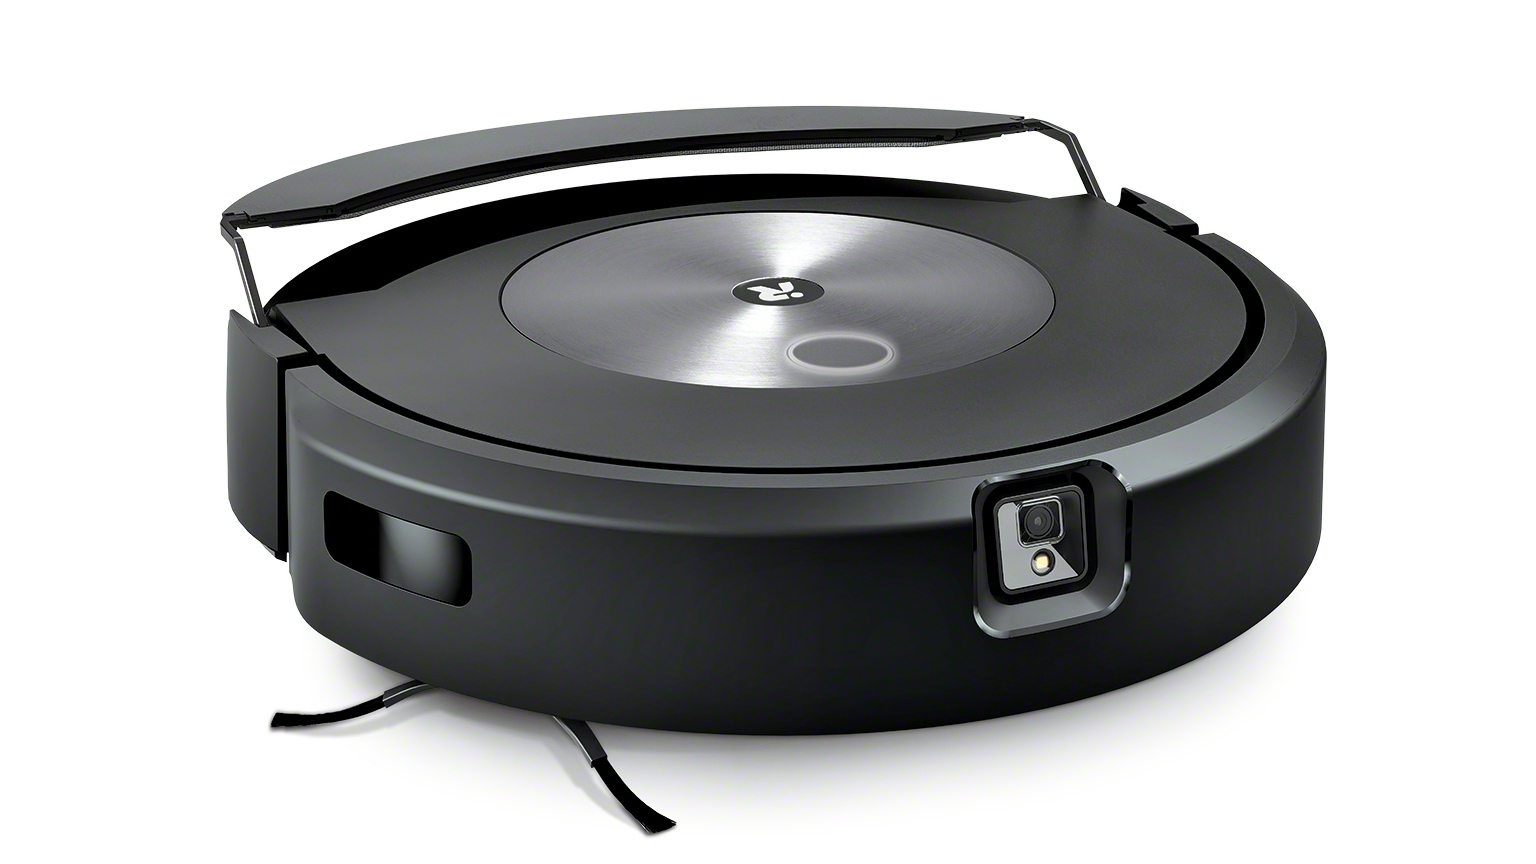 How To Setup iRobot Roomba j7? Read Here!